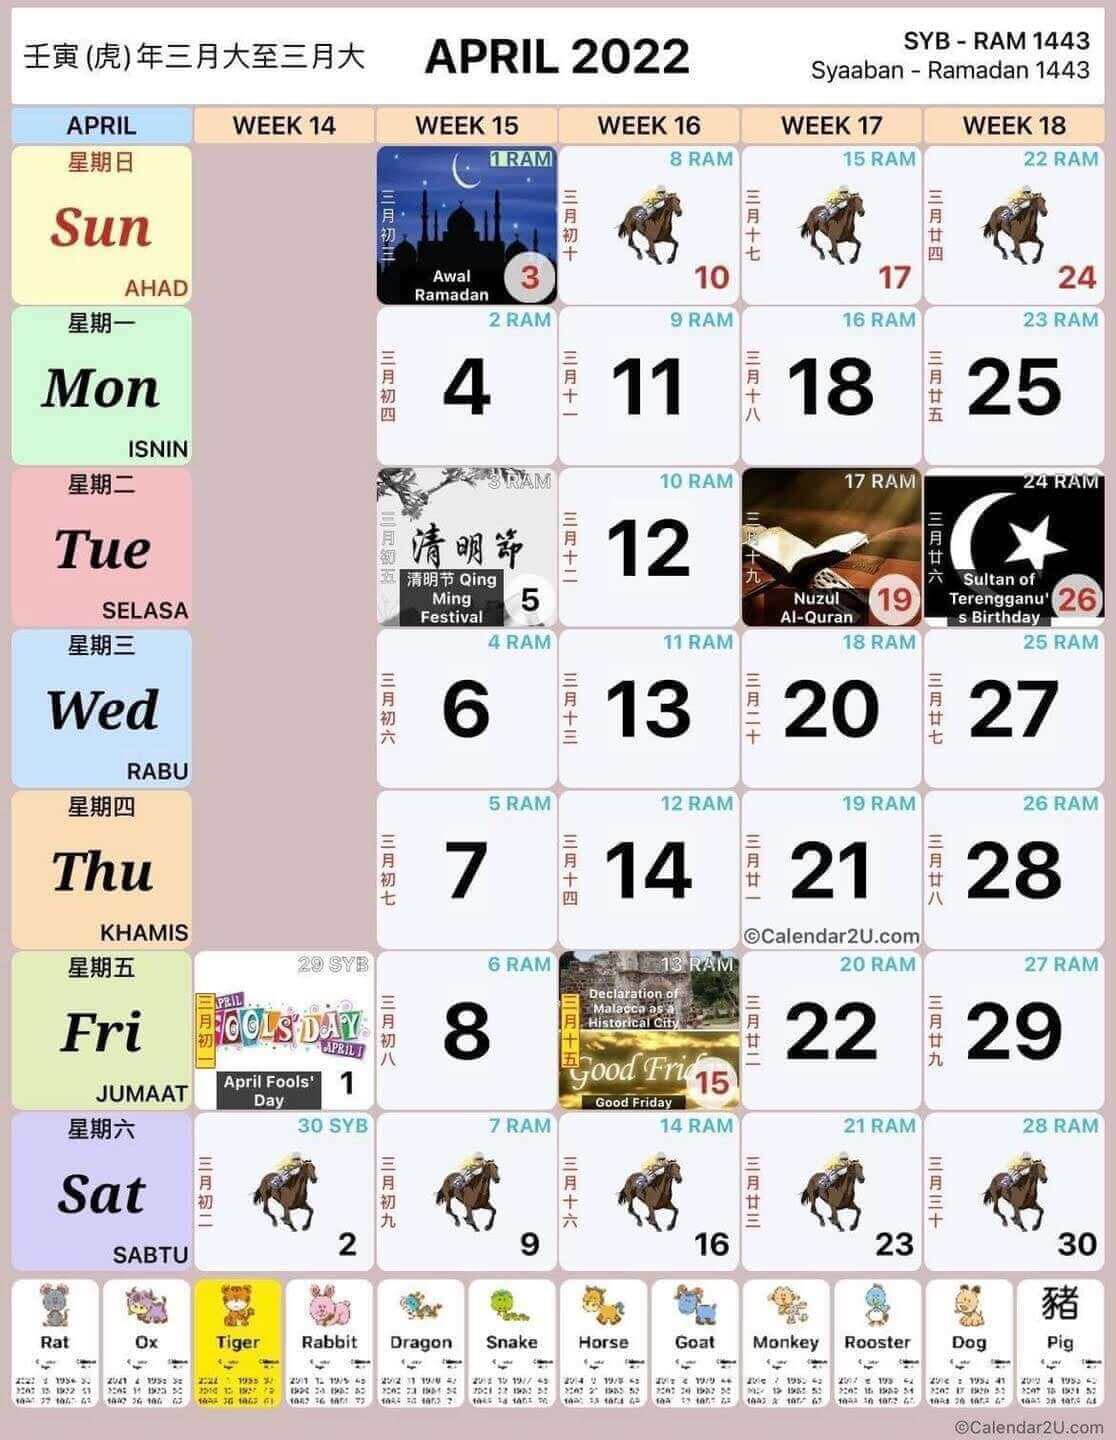 Kuda malaysia calendar 2022 KALENDAR KUDA